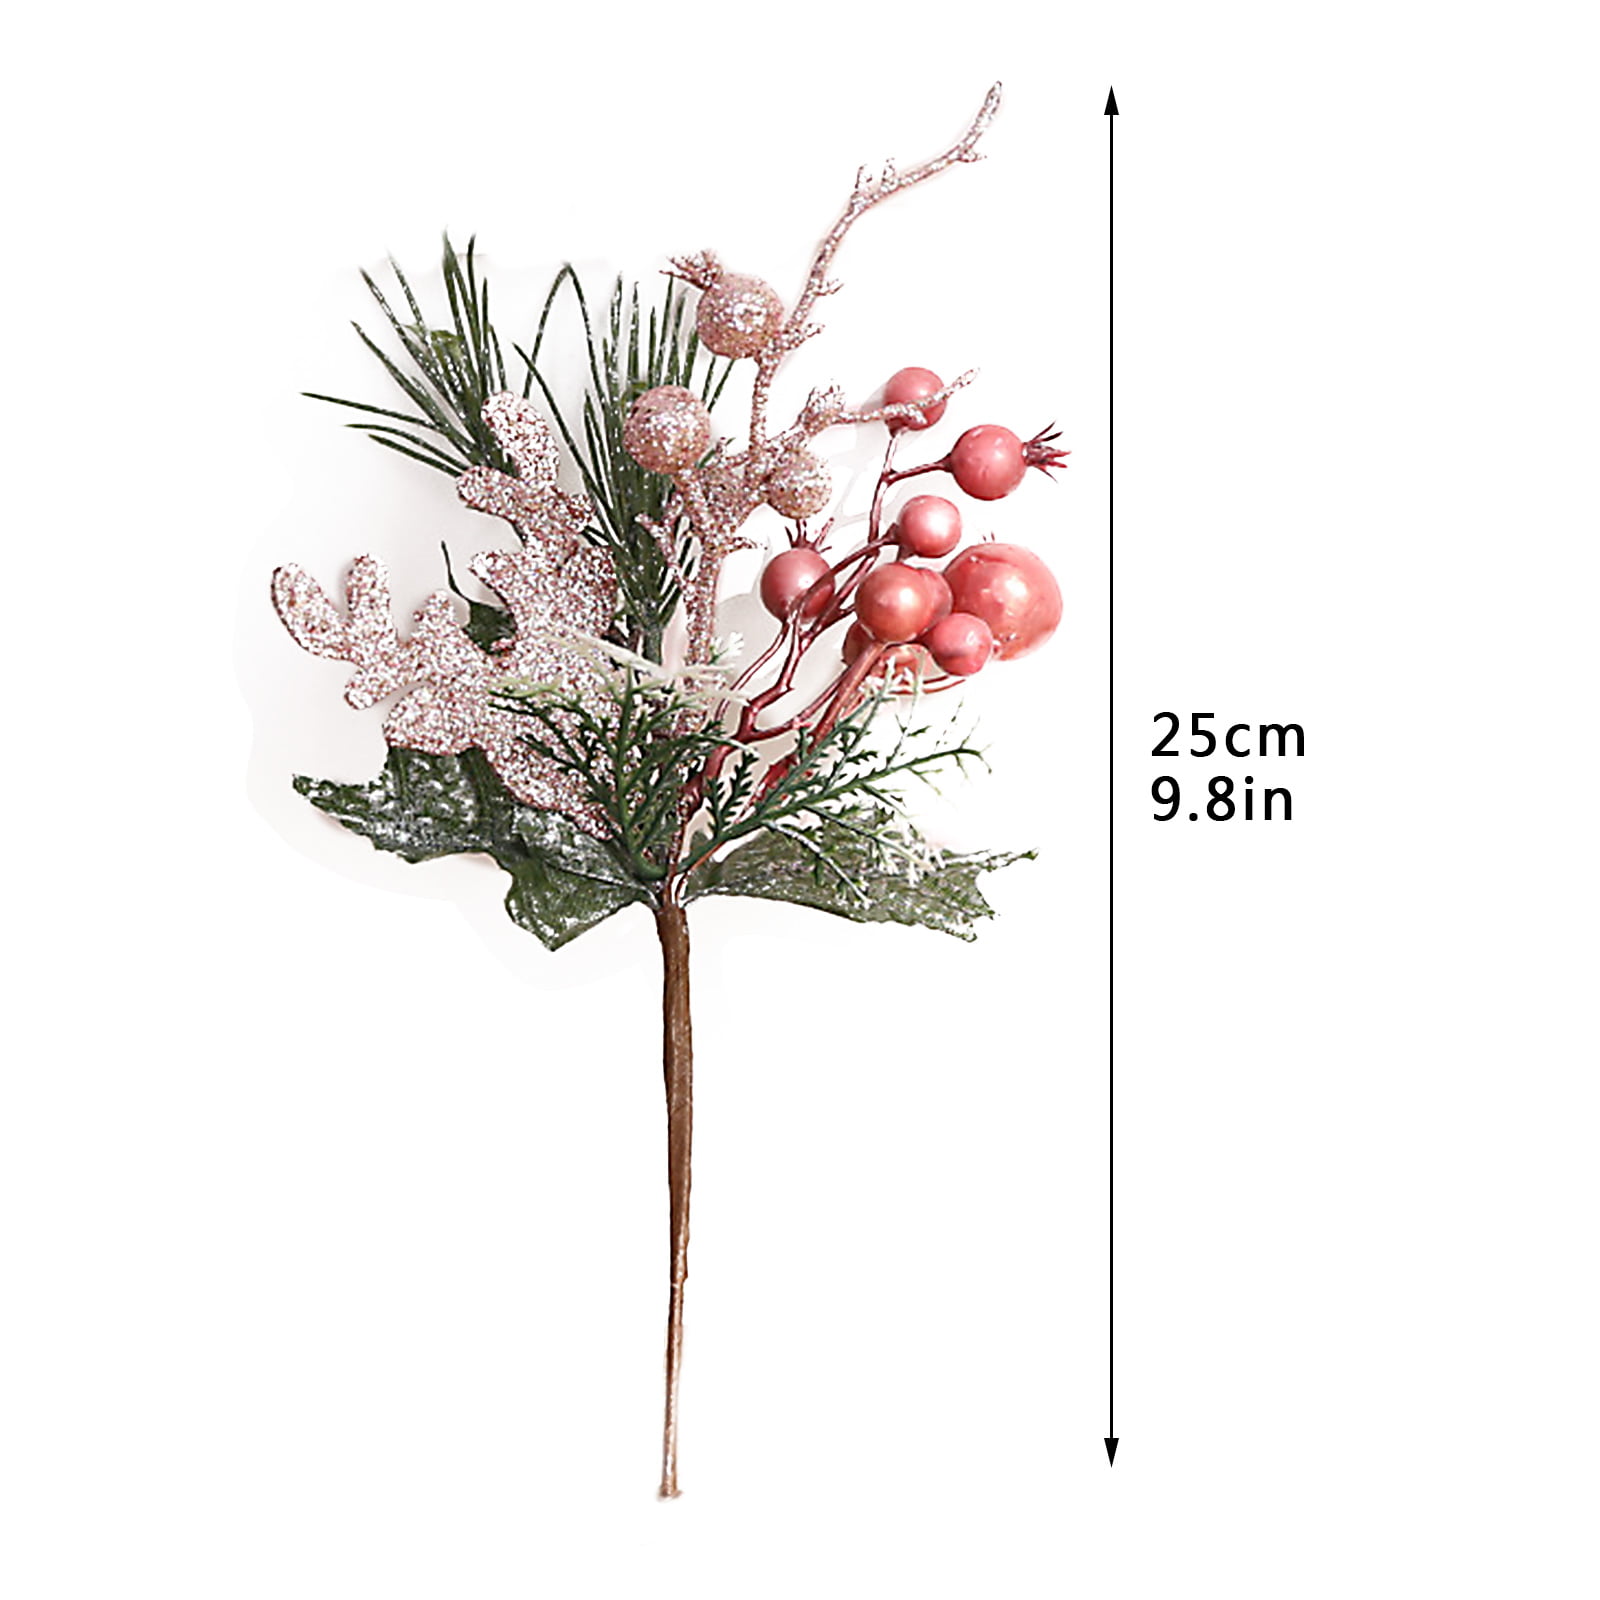  Didiseaon 1pc Artificial Bouquet Pine Needles Berry